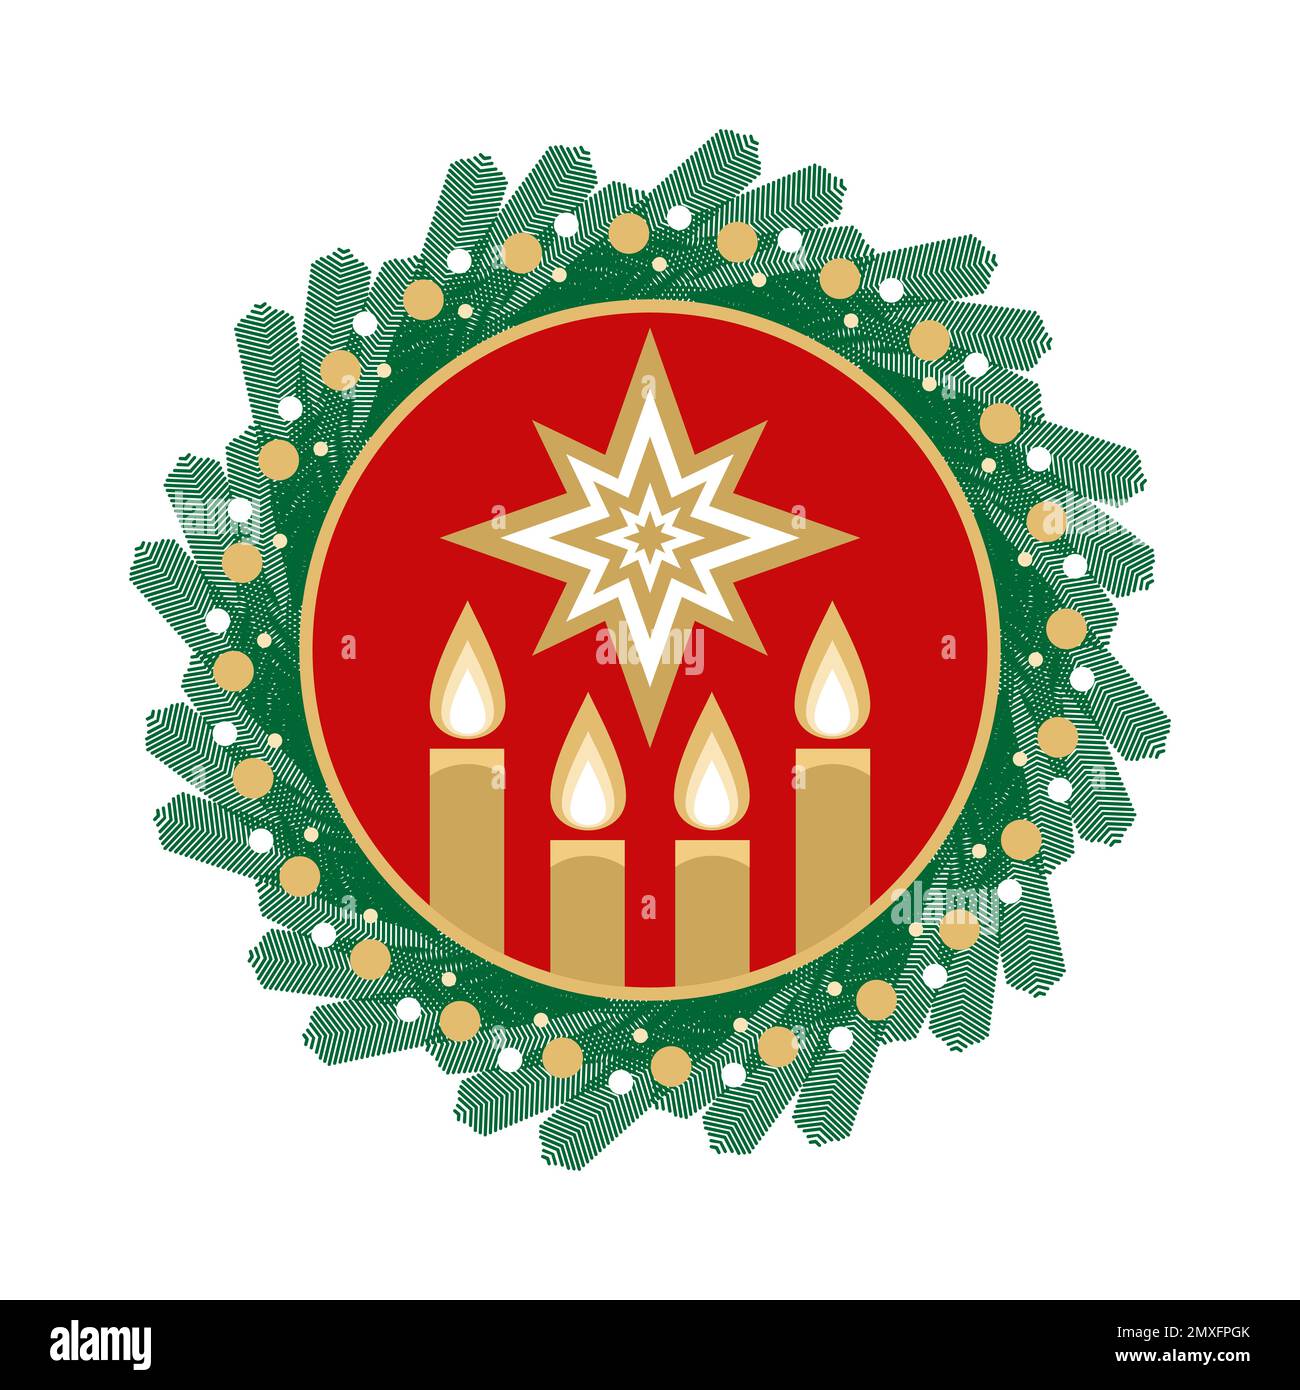 Illustrazione di vettore di Natale. Quattro candele di Avvento accese in previsione della nascita di Gesù Cristo, incorniciate da una corona di abete rosso. Illustrazione Vettoriale